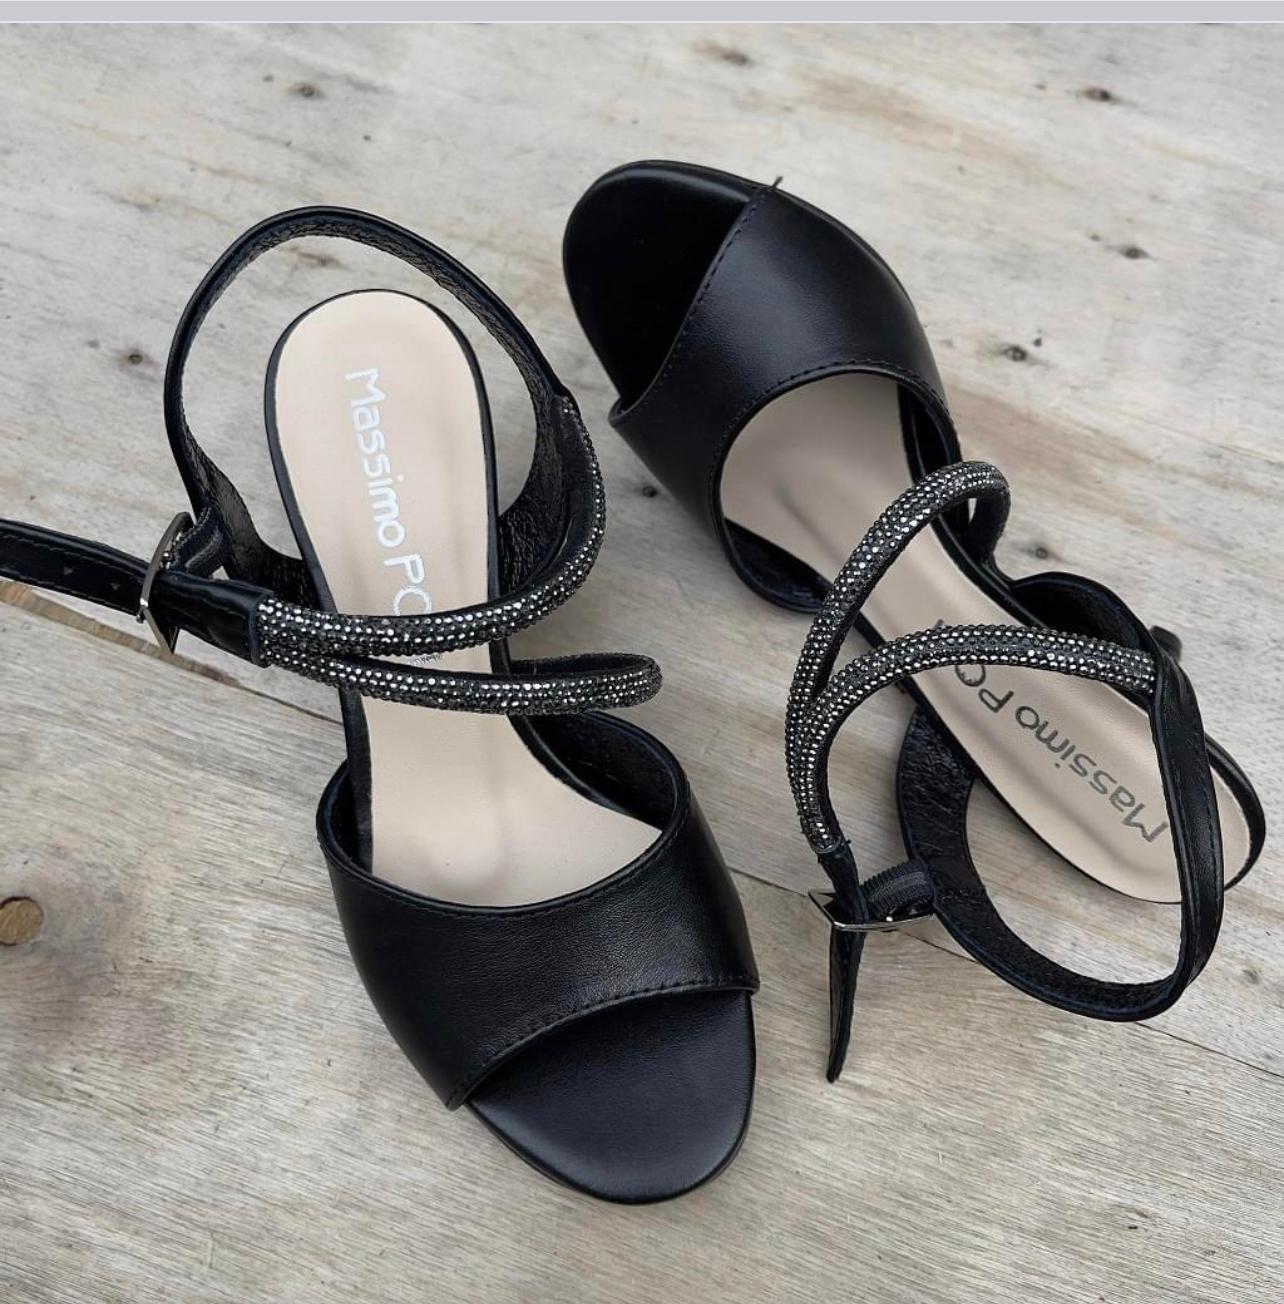 Cross strap kitten heel sandals in black leather